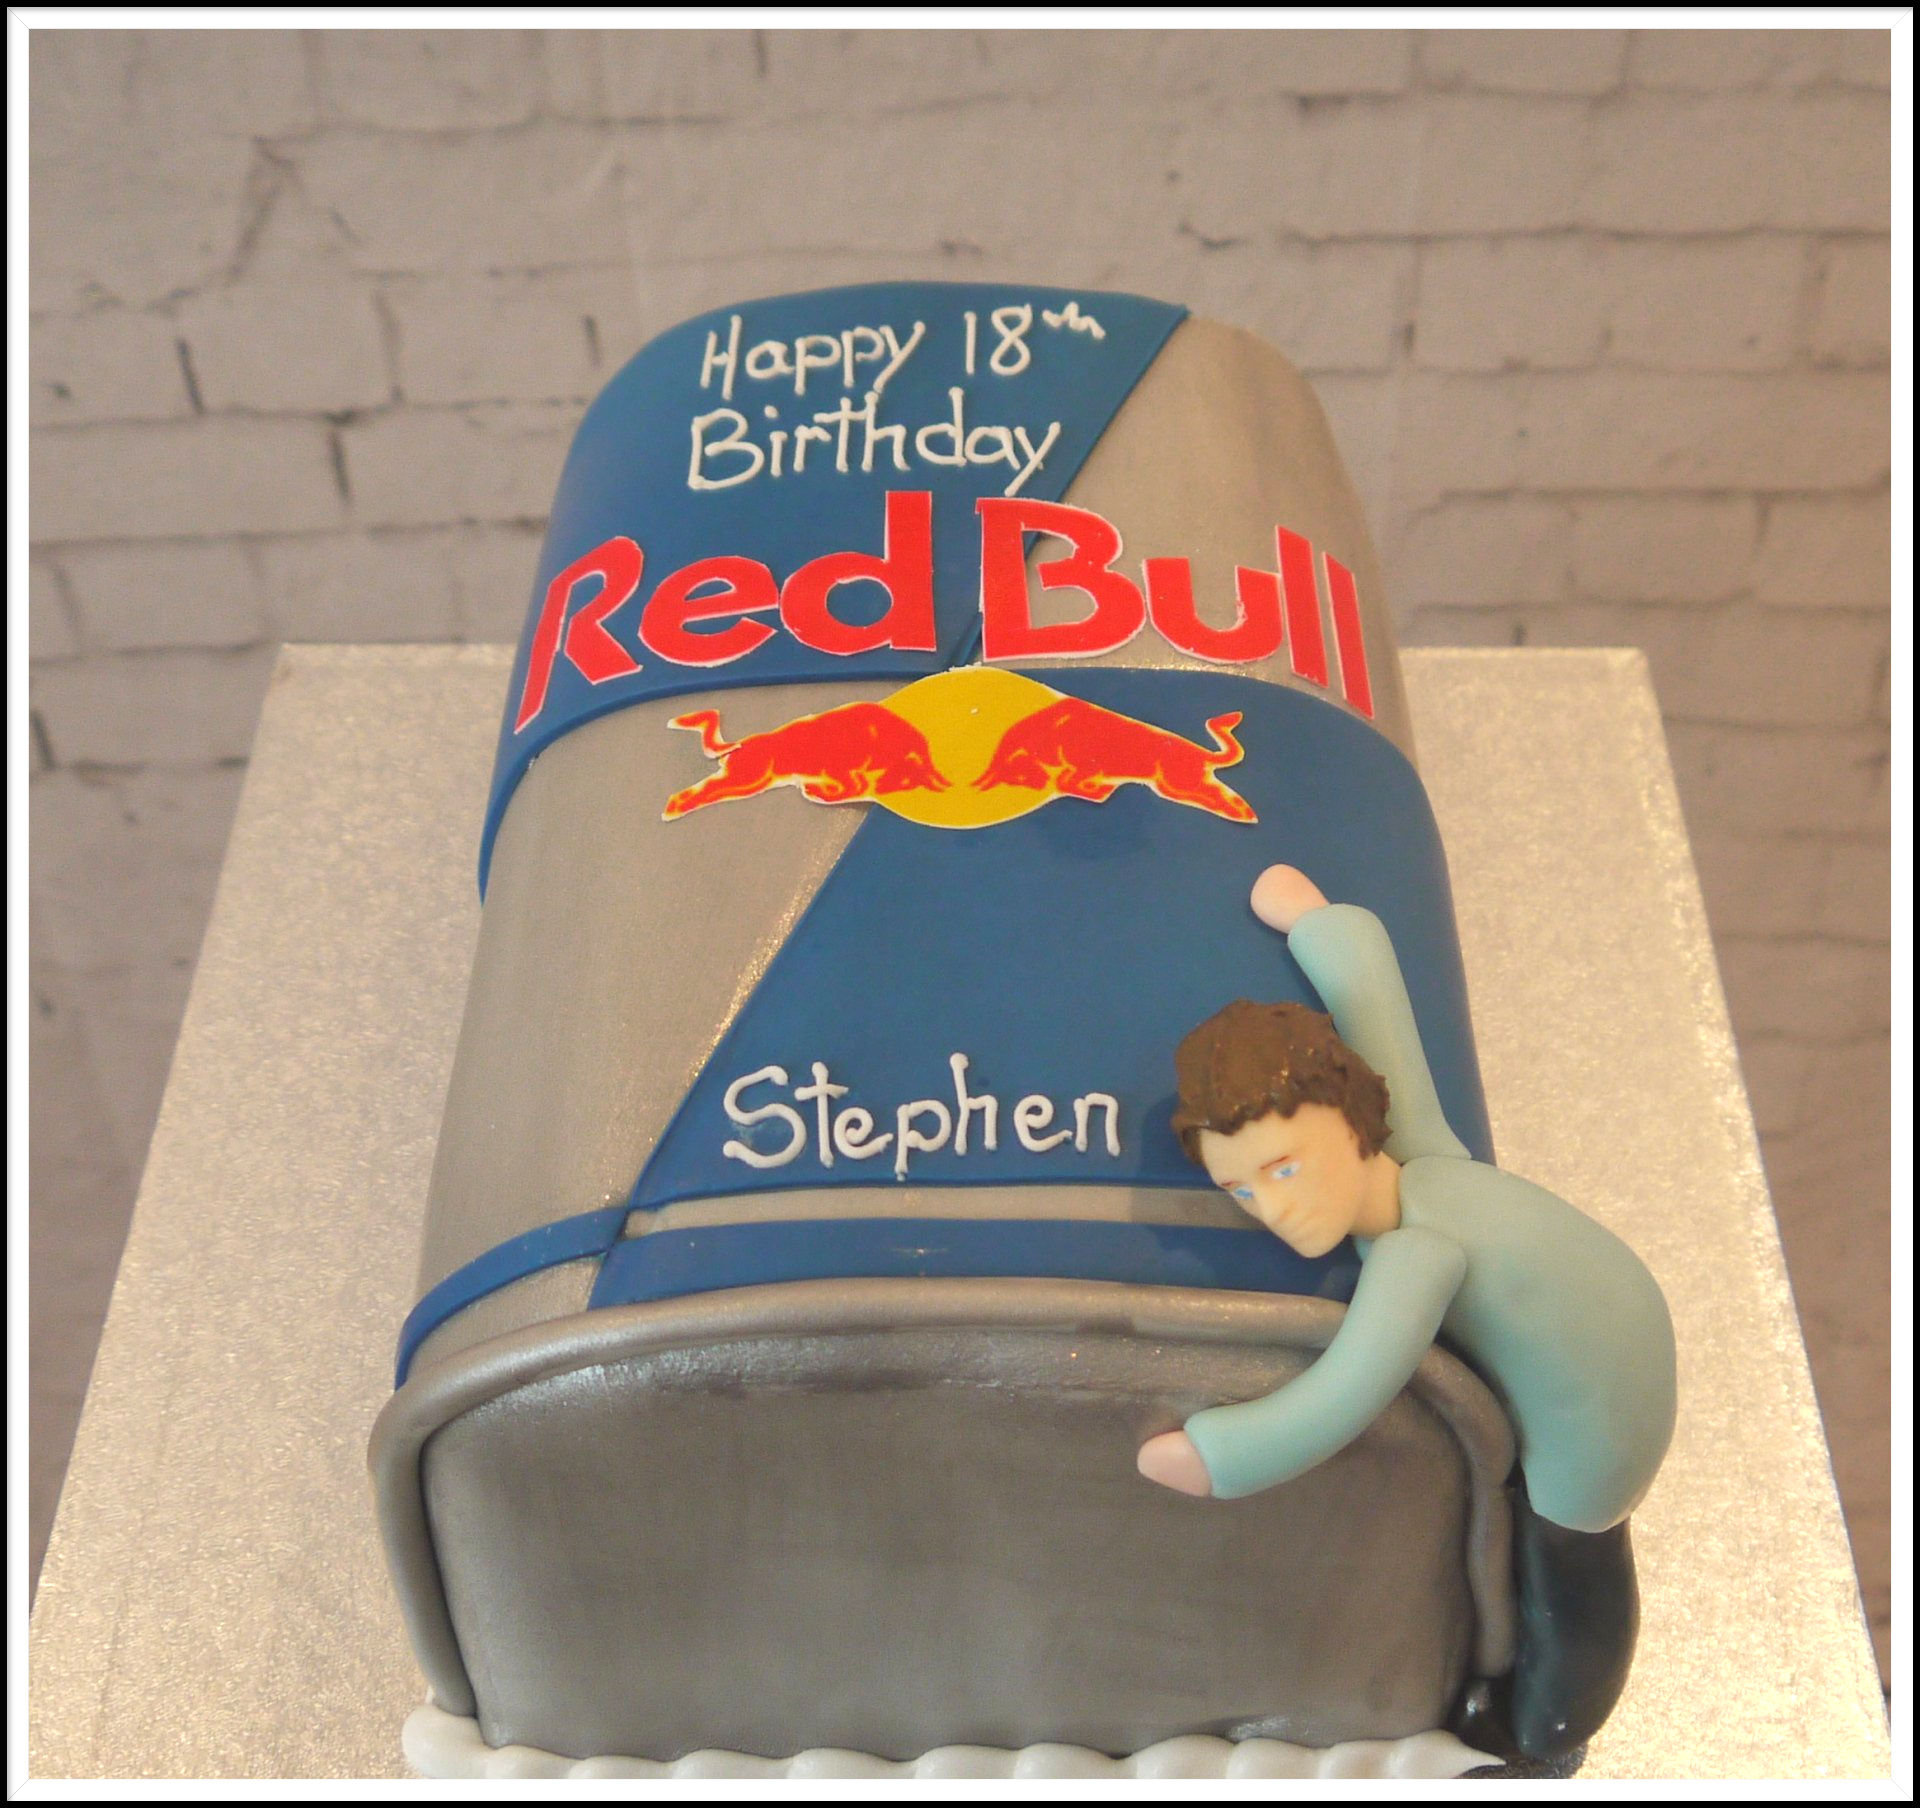 Red Bull birthday cake